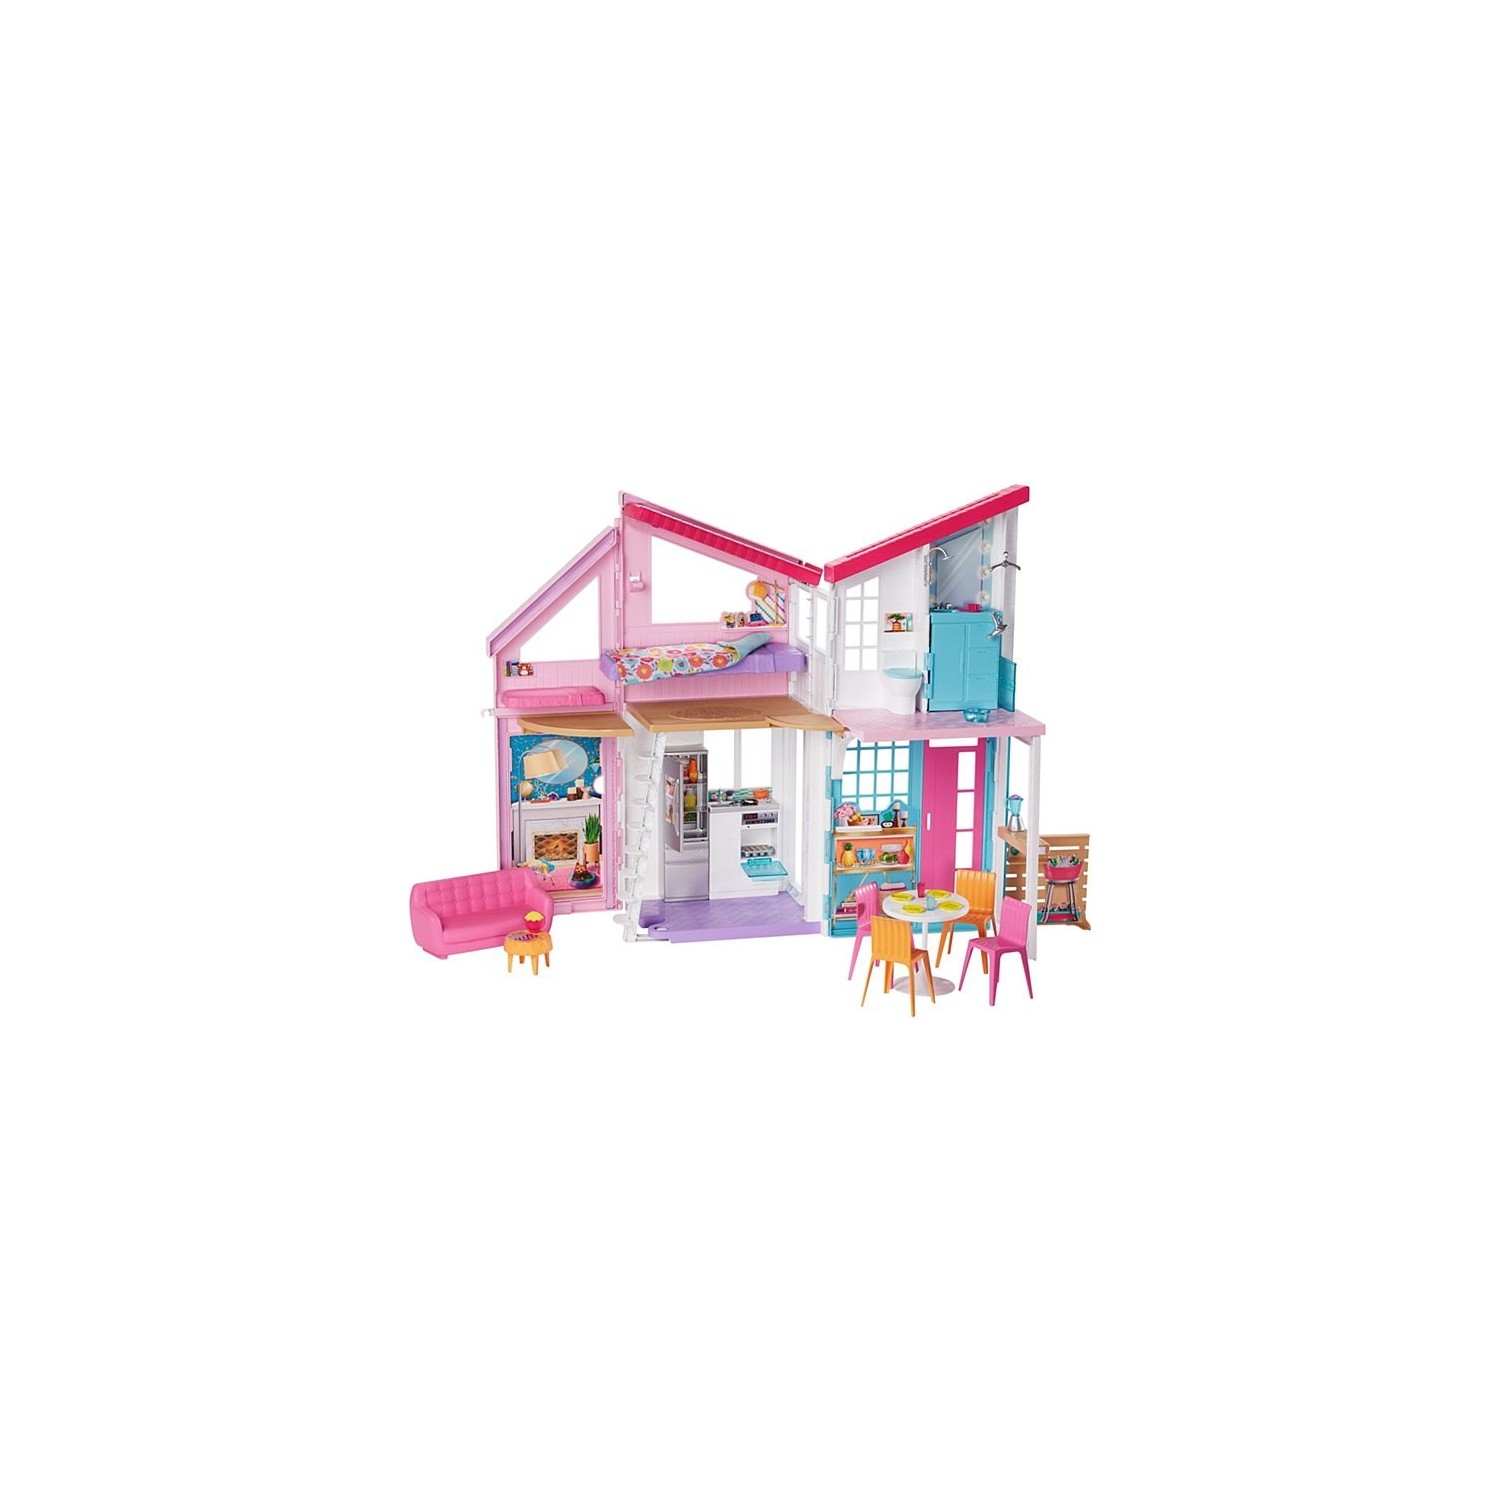 Игровой набор Barbie Malibu House barbie кукольный домик glh56 розовый